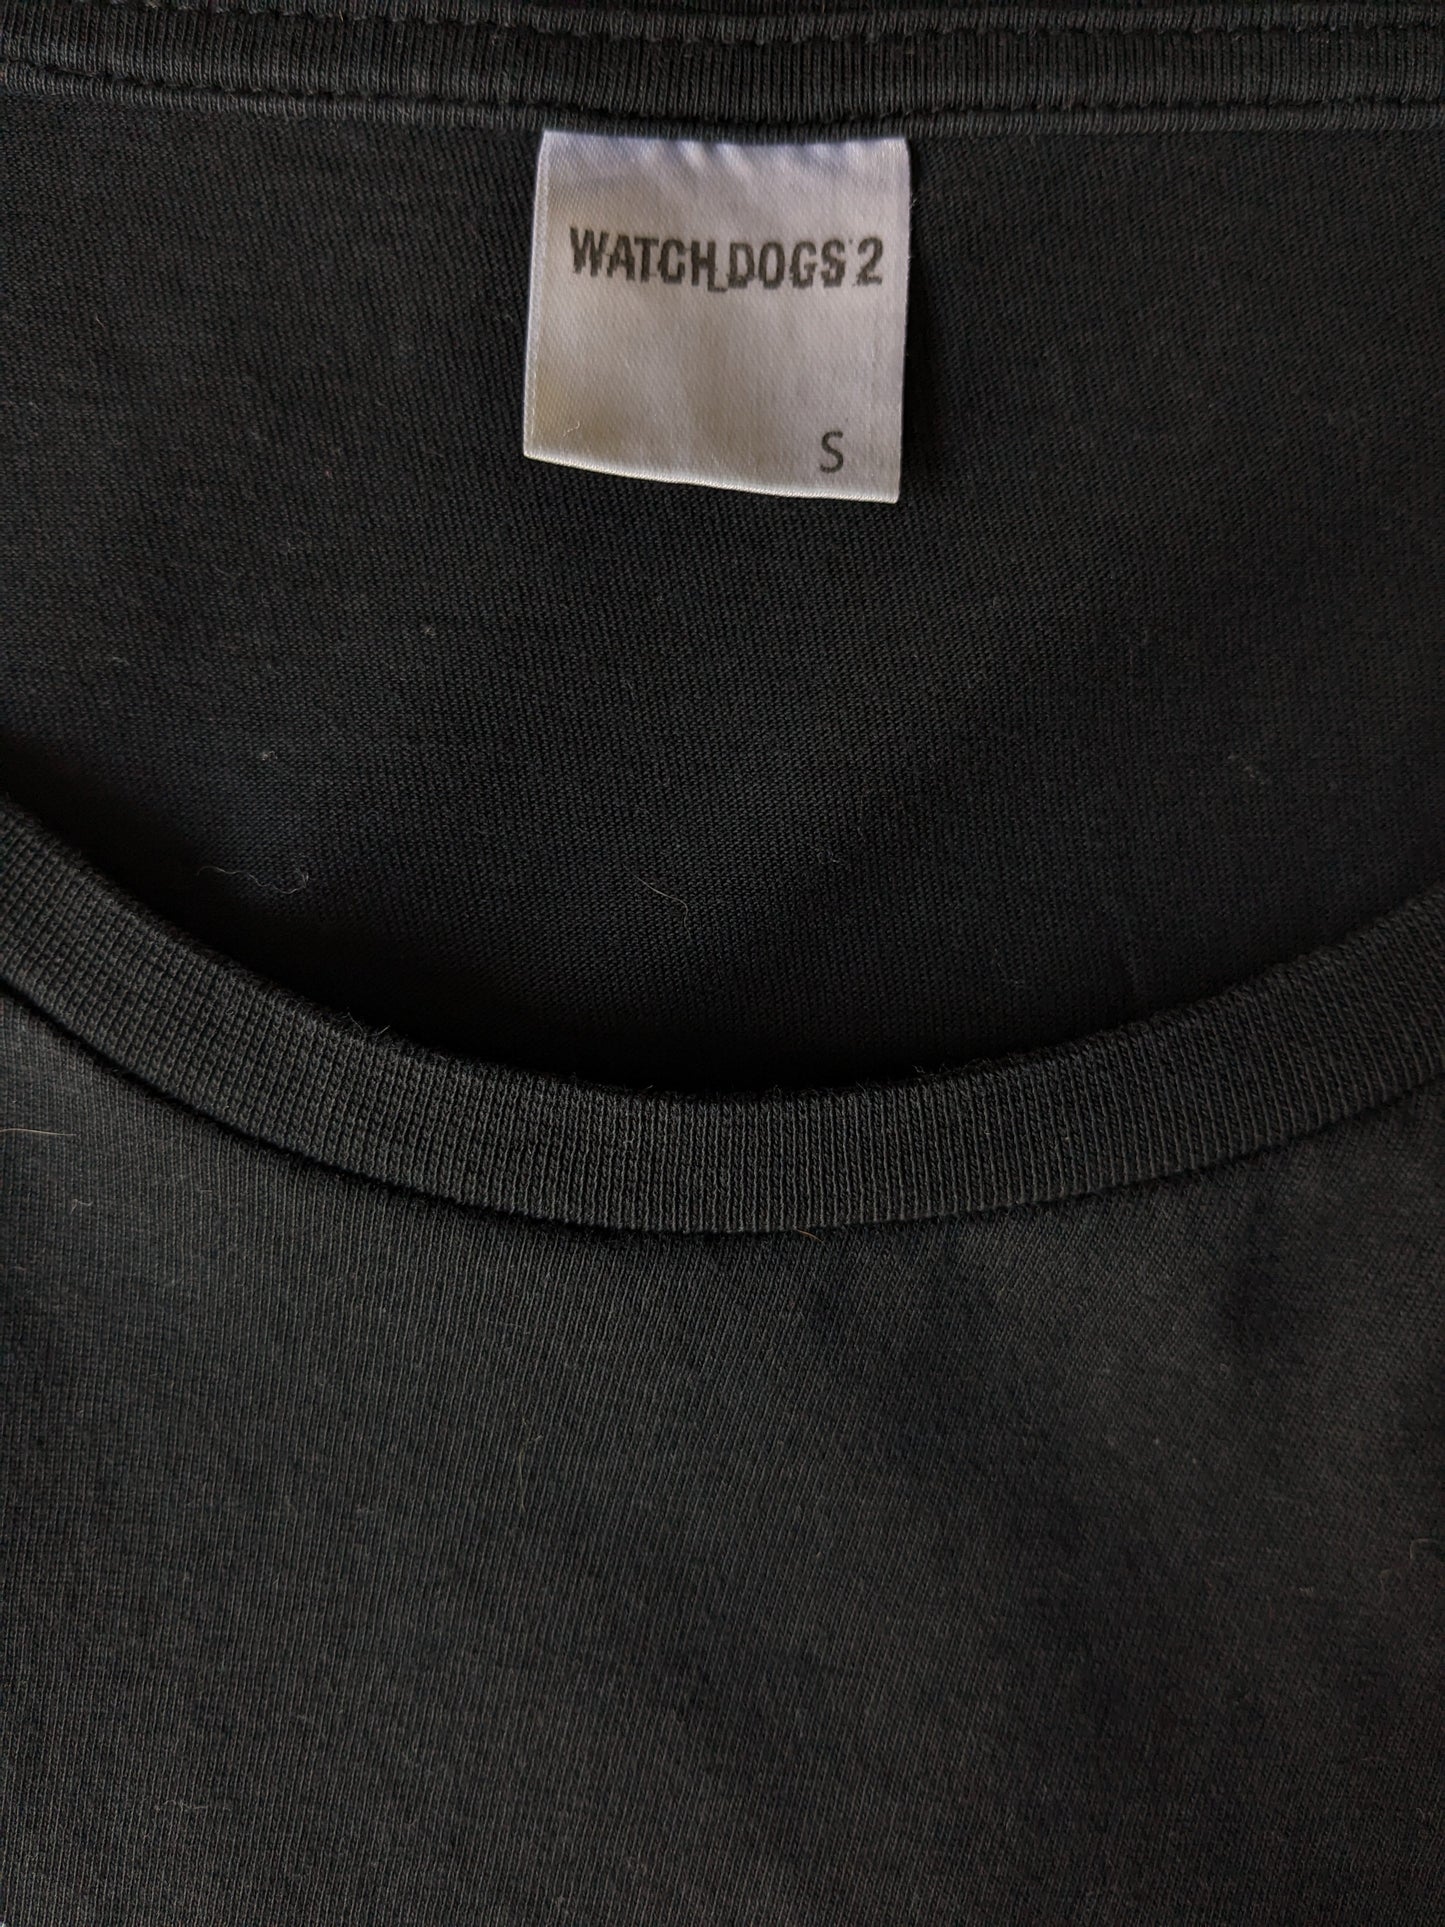 Watch Dogs 2 shirt. Zwart met opdruk "The return of dedsec". Maat S.